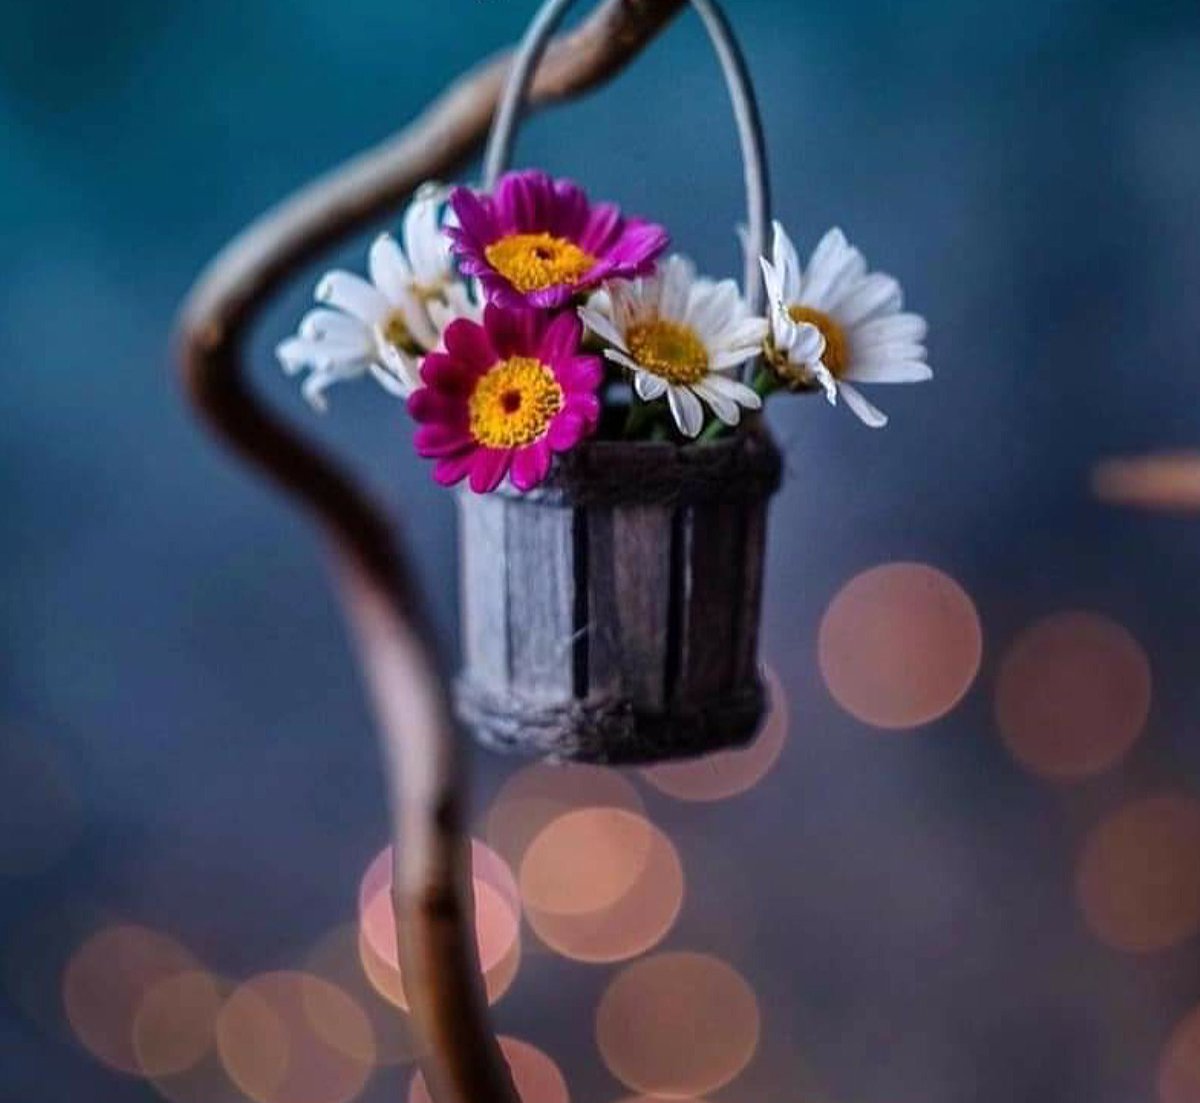 🕊
   Sen Allah' a güven!

Hiç beklemediğin anda,

   çiçek açar umutlar...

                 💙

/Mevlana🌿

🌸 Hayırlı Akşamlar __

#akşam #günbatımı #pazartesi
#aralık #kış #mevsim
#hayat #insan #zaman
#Mevlana #ilahiaşk #tasavvuf
#iyiakşamlar #hayırlıakşamalar
#mutluakşamlar